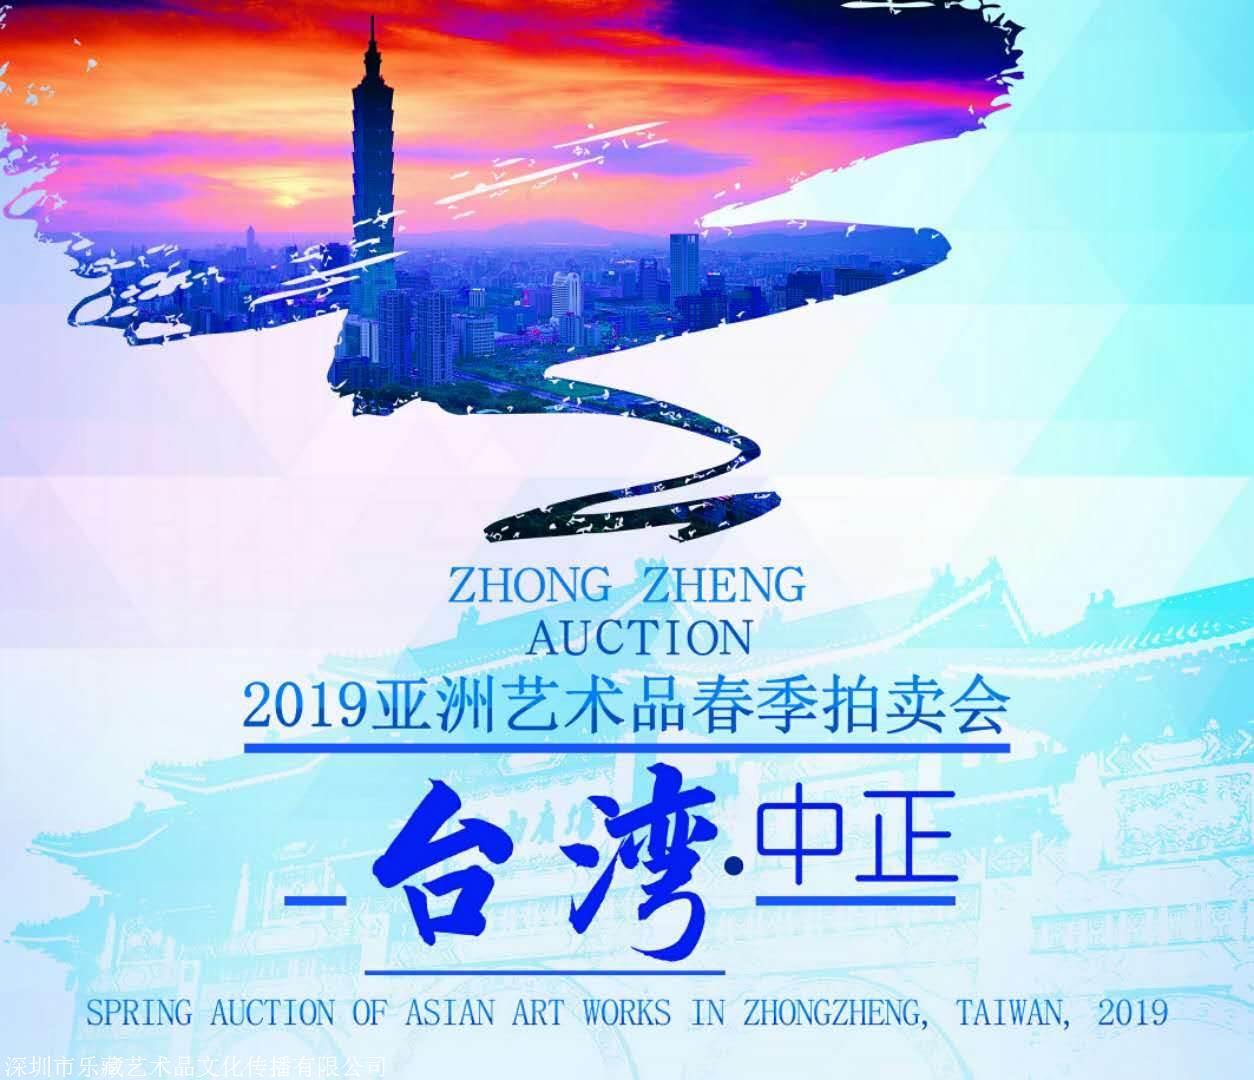 2019年台湾中正亚洲艺术品春季拍卖会